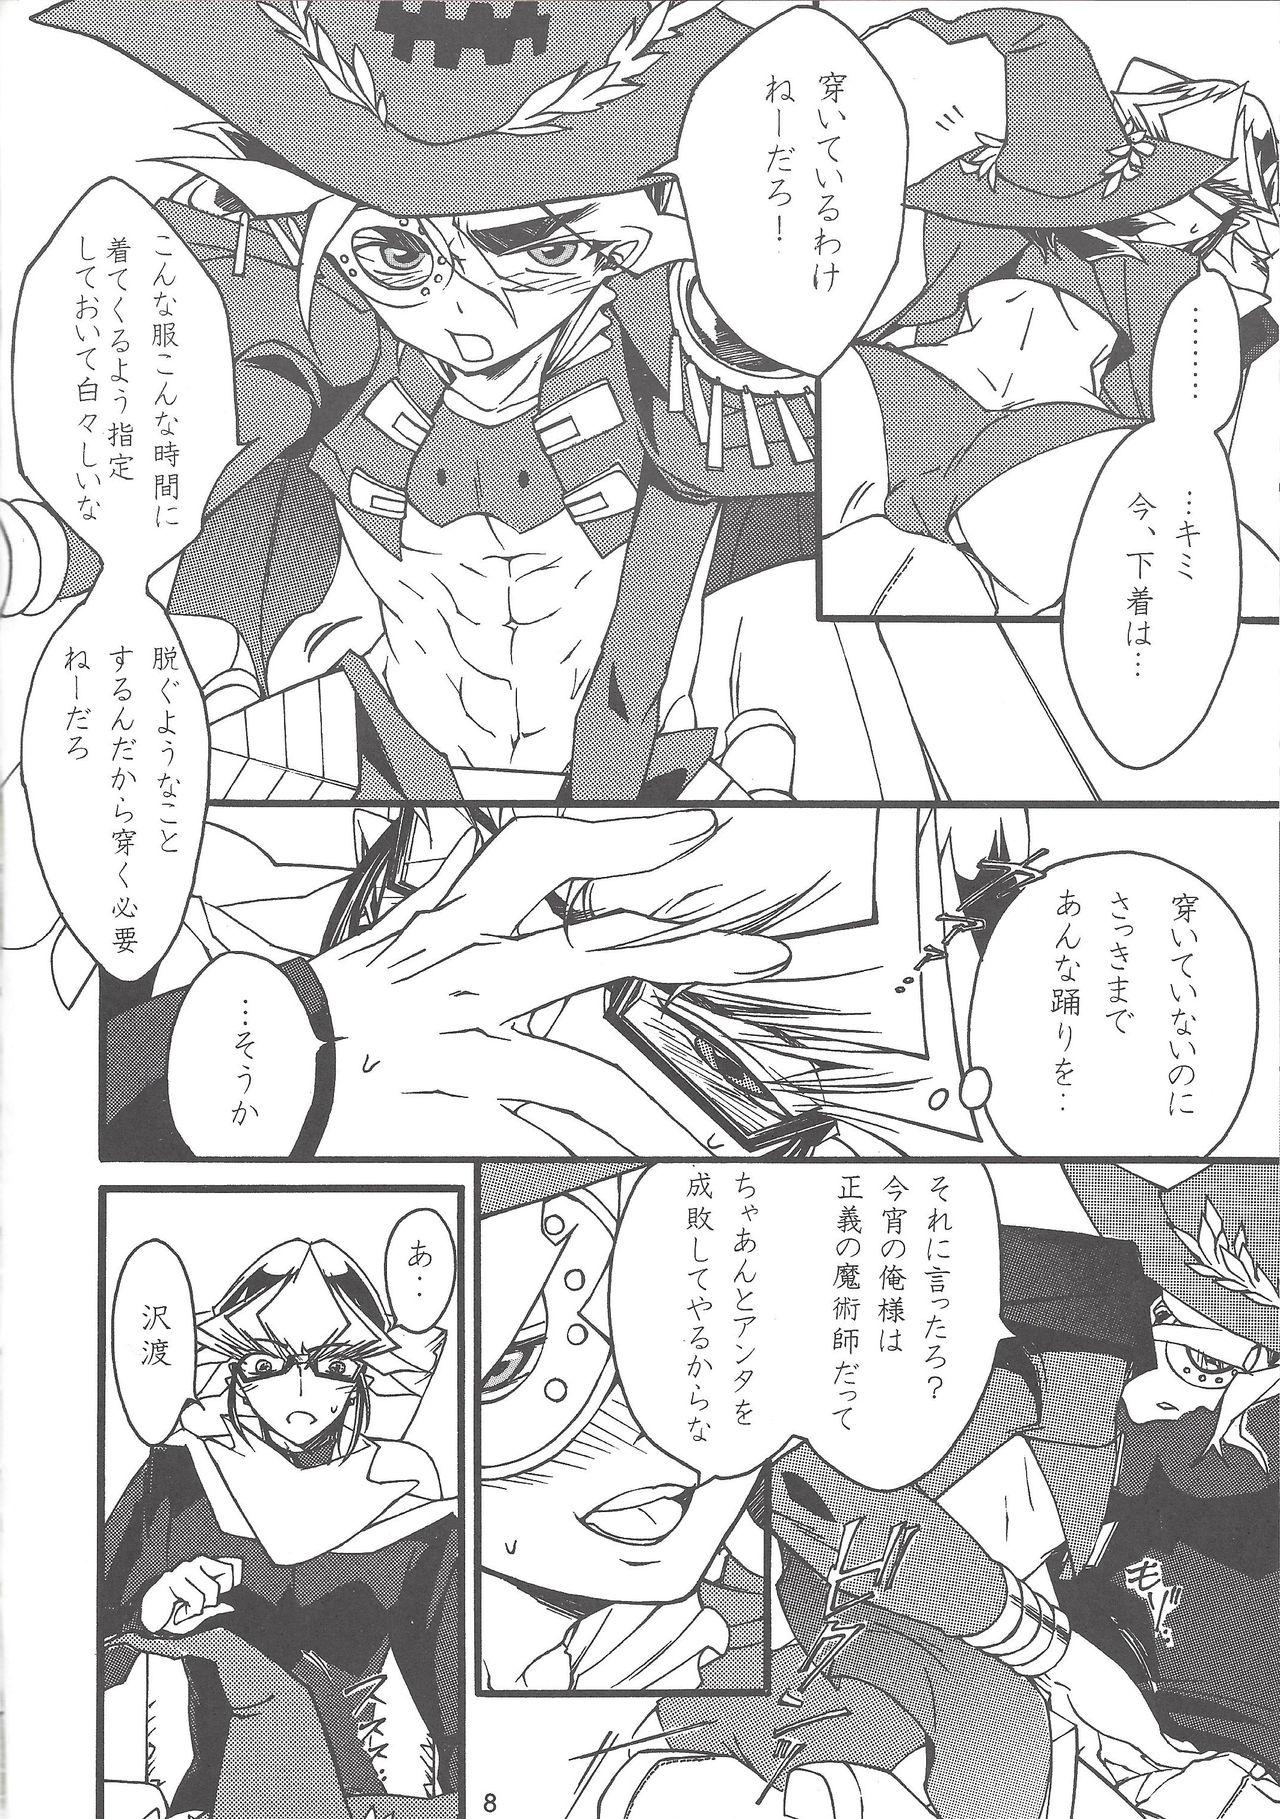 Cdmx Majutsu-shi to bokushin no yoru - Yu-gi-oh arc-v Glasses - Page 7